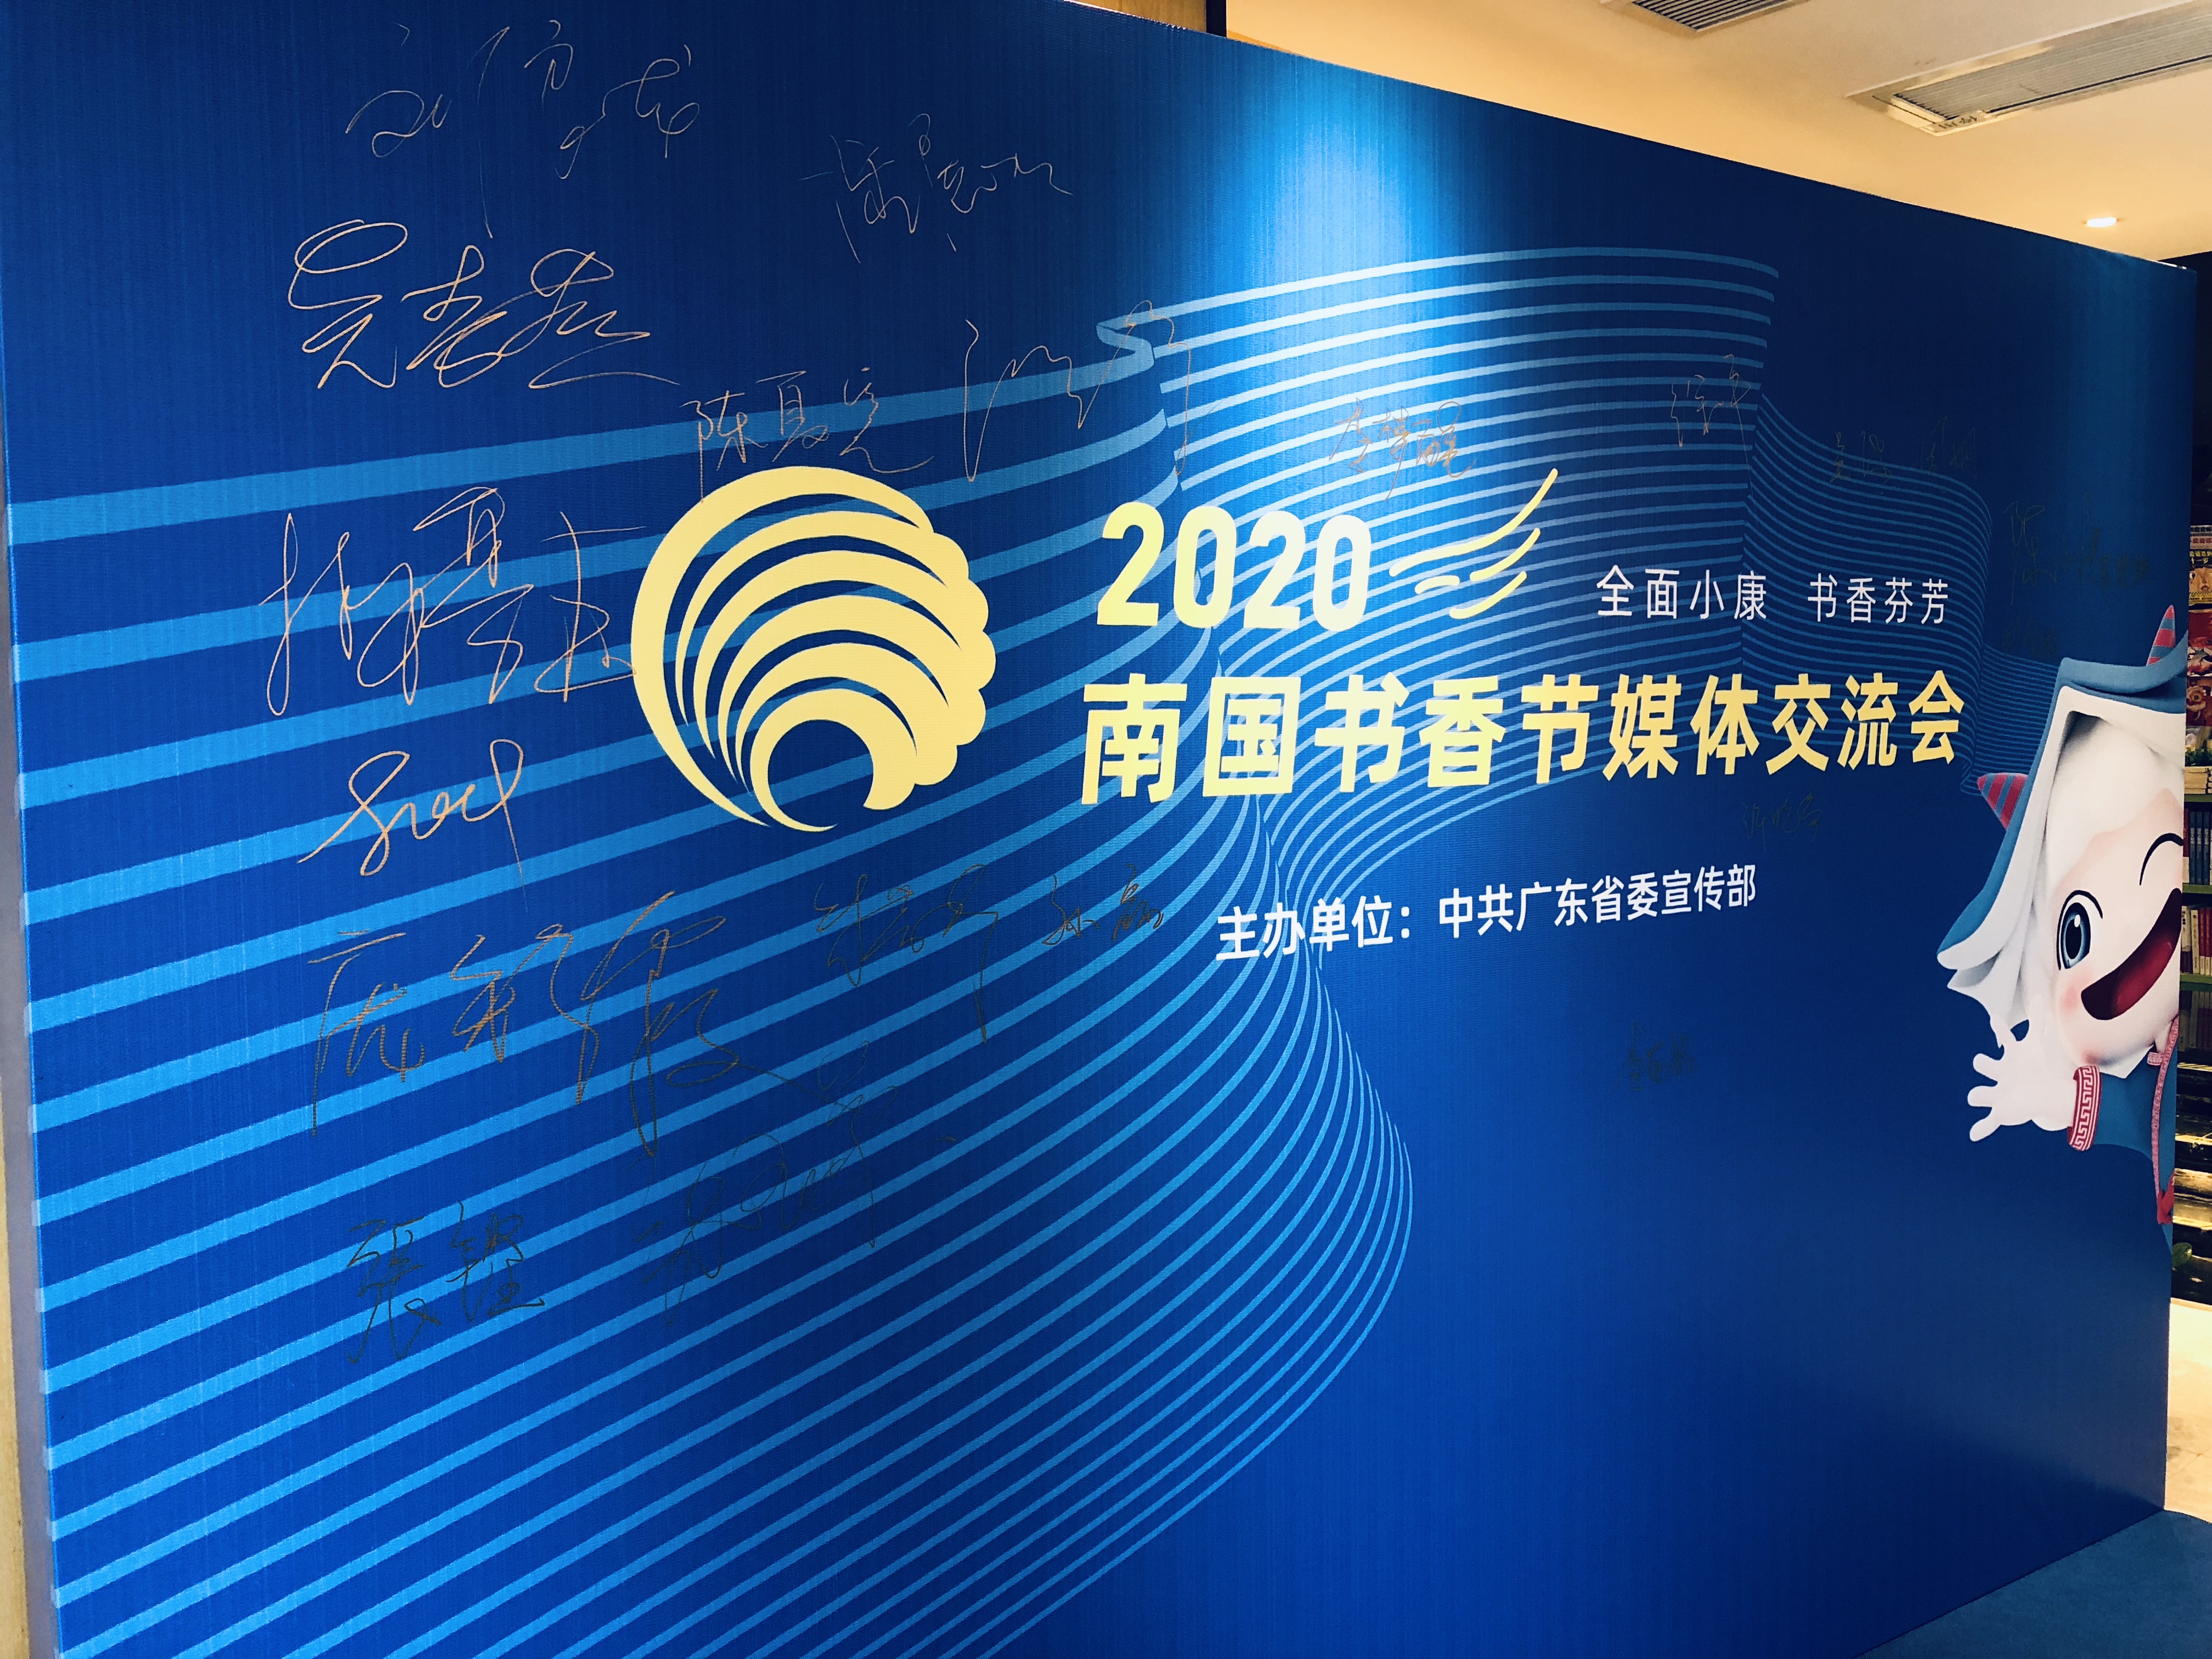 南国书香节组委会在广州店召开2020南国书香节媒体交流会